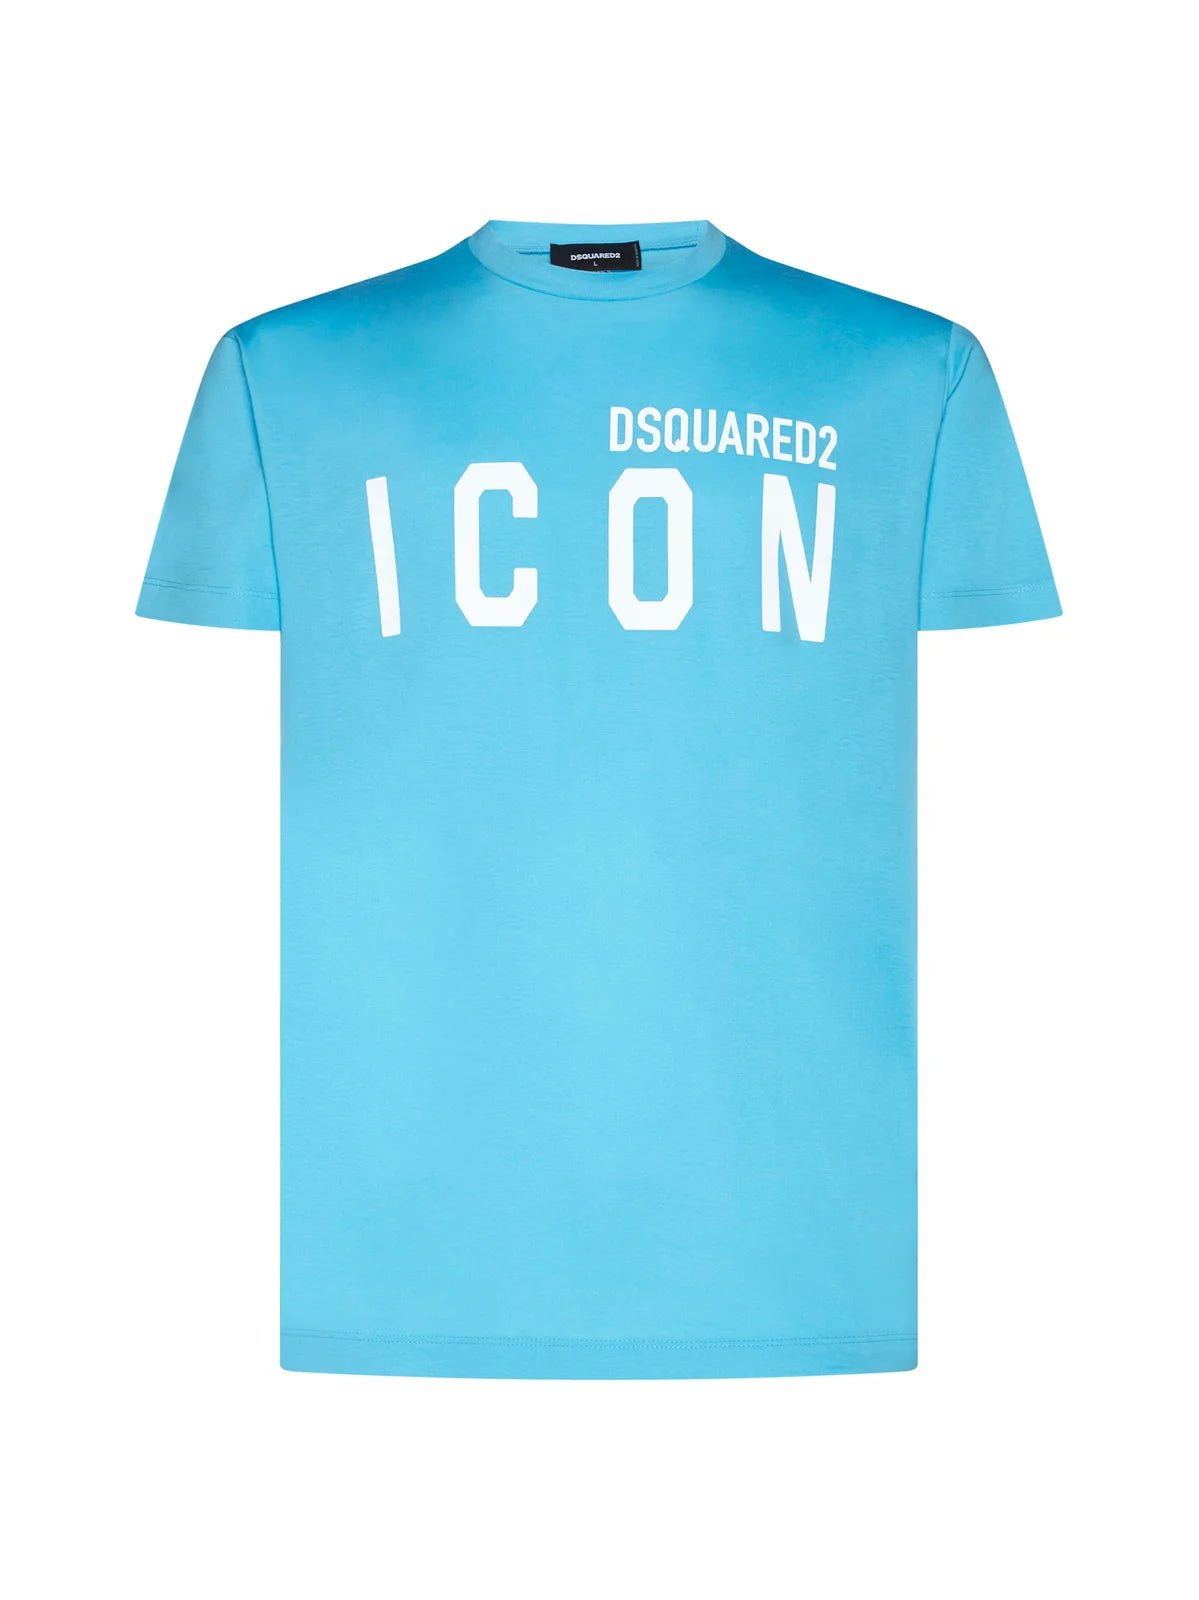 Dsquared2 Icon logo printed t-shirt - 514 Sky Blue - Escape Menswear